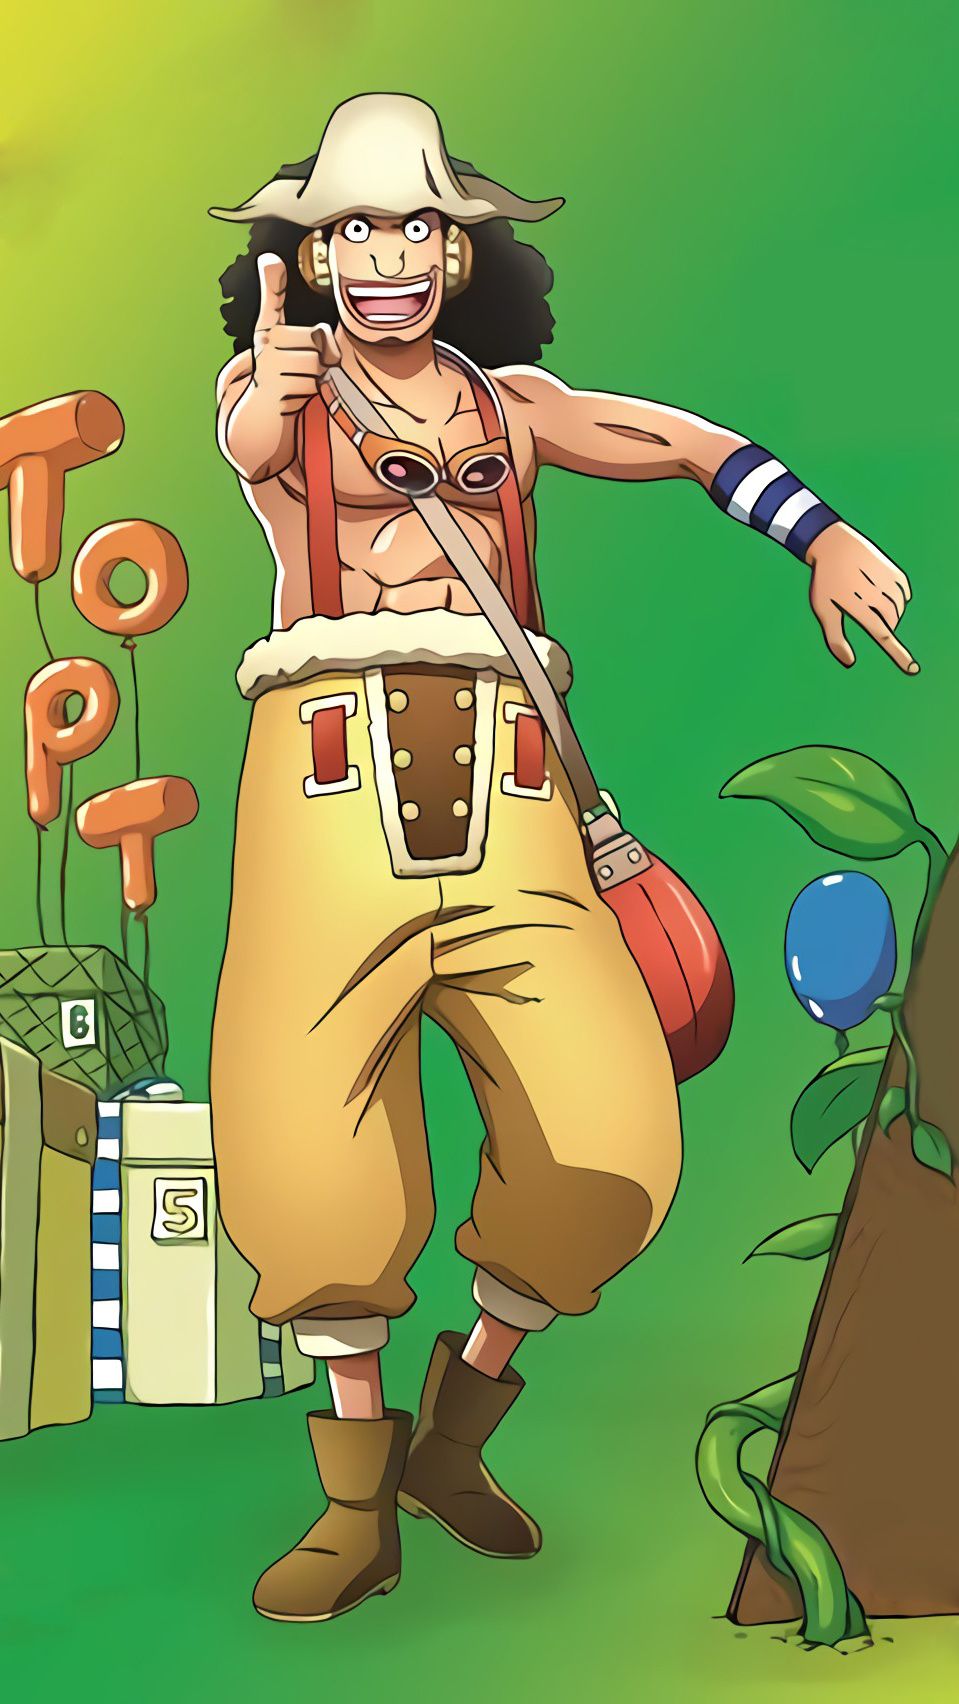 Tải Hình Nền One Piece Usopp Full HD Đẹp Nhất